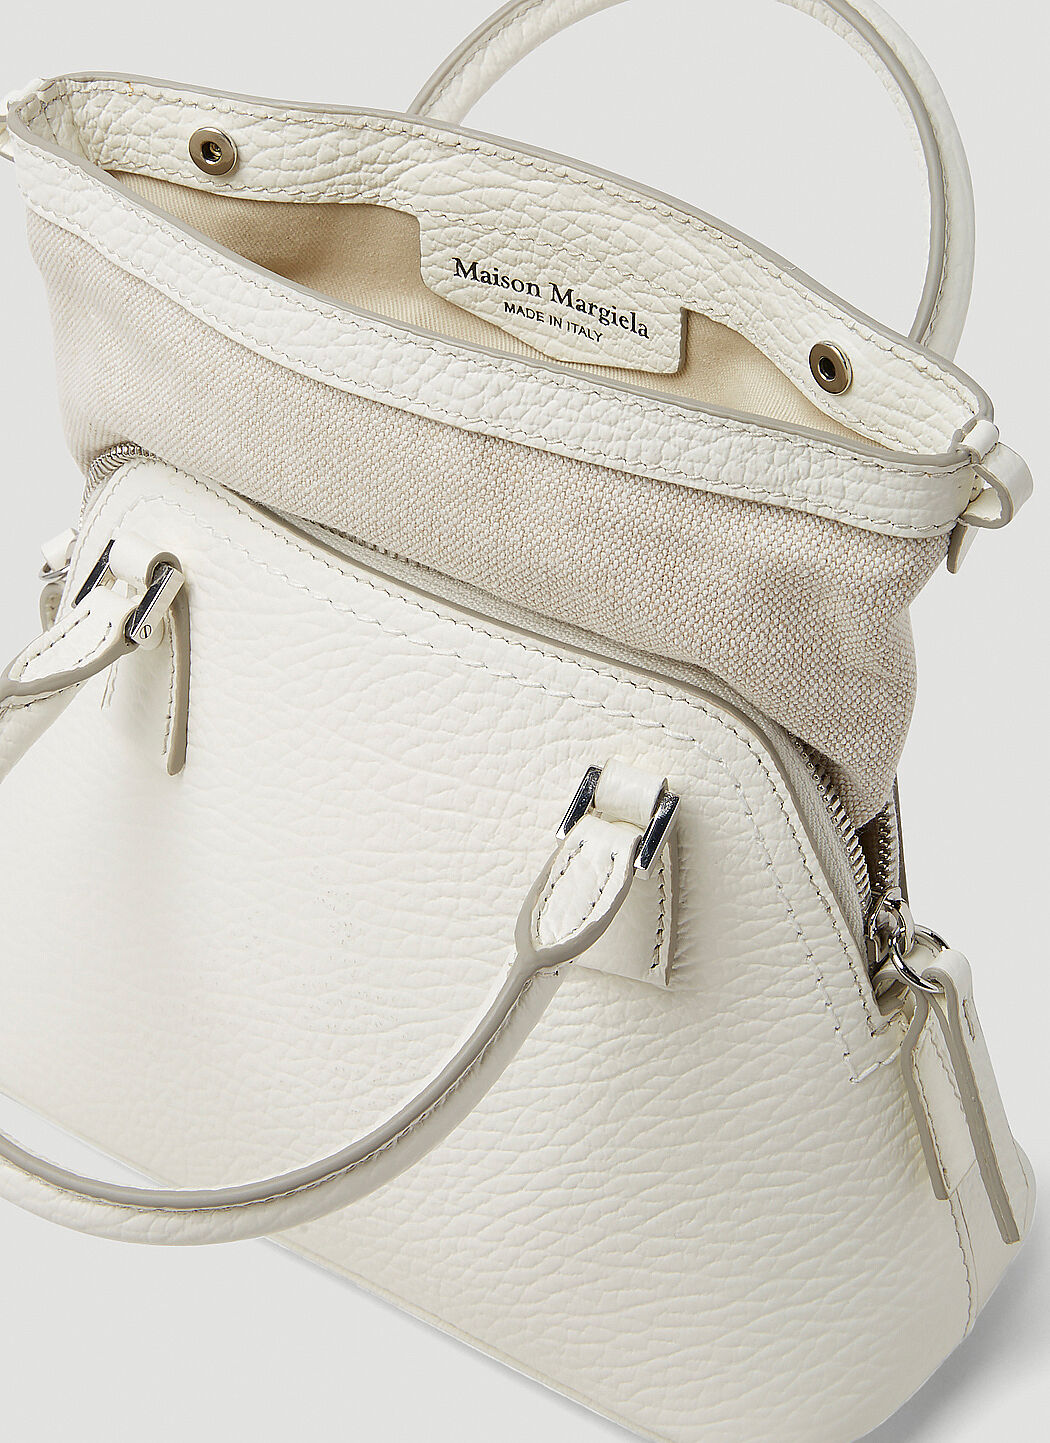 Maison Margiela 5AC Micro Handbag in White | LN-CC